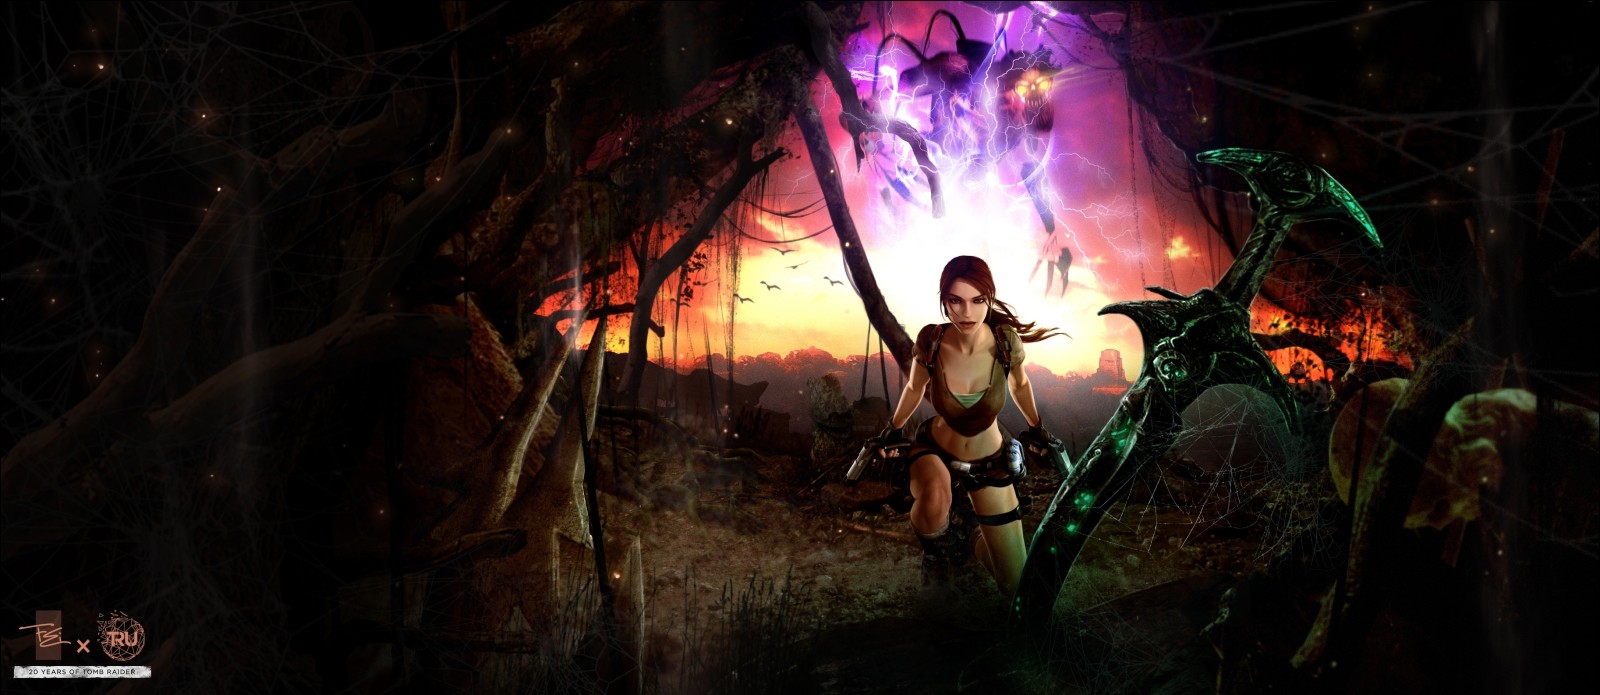 con gái, thanh kiếm, Huyền thoại, Lăng mộ, Lara Croft, Excalibur